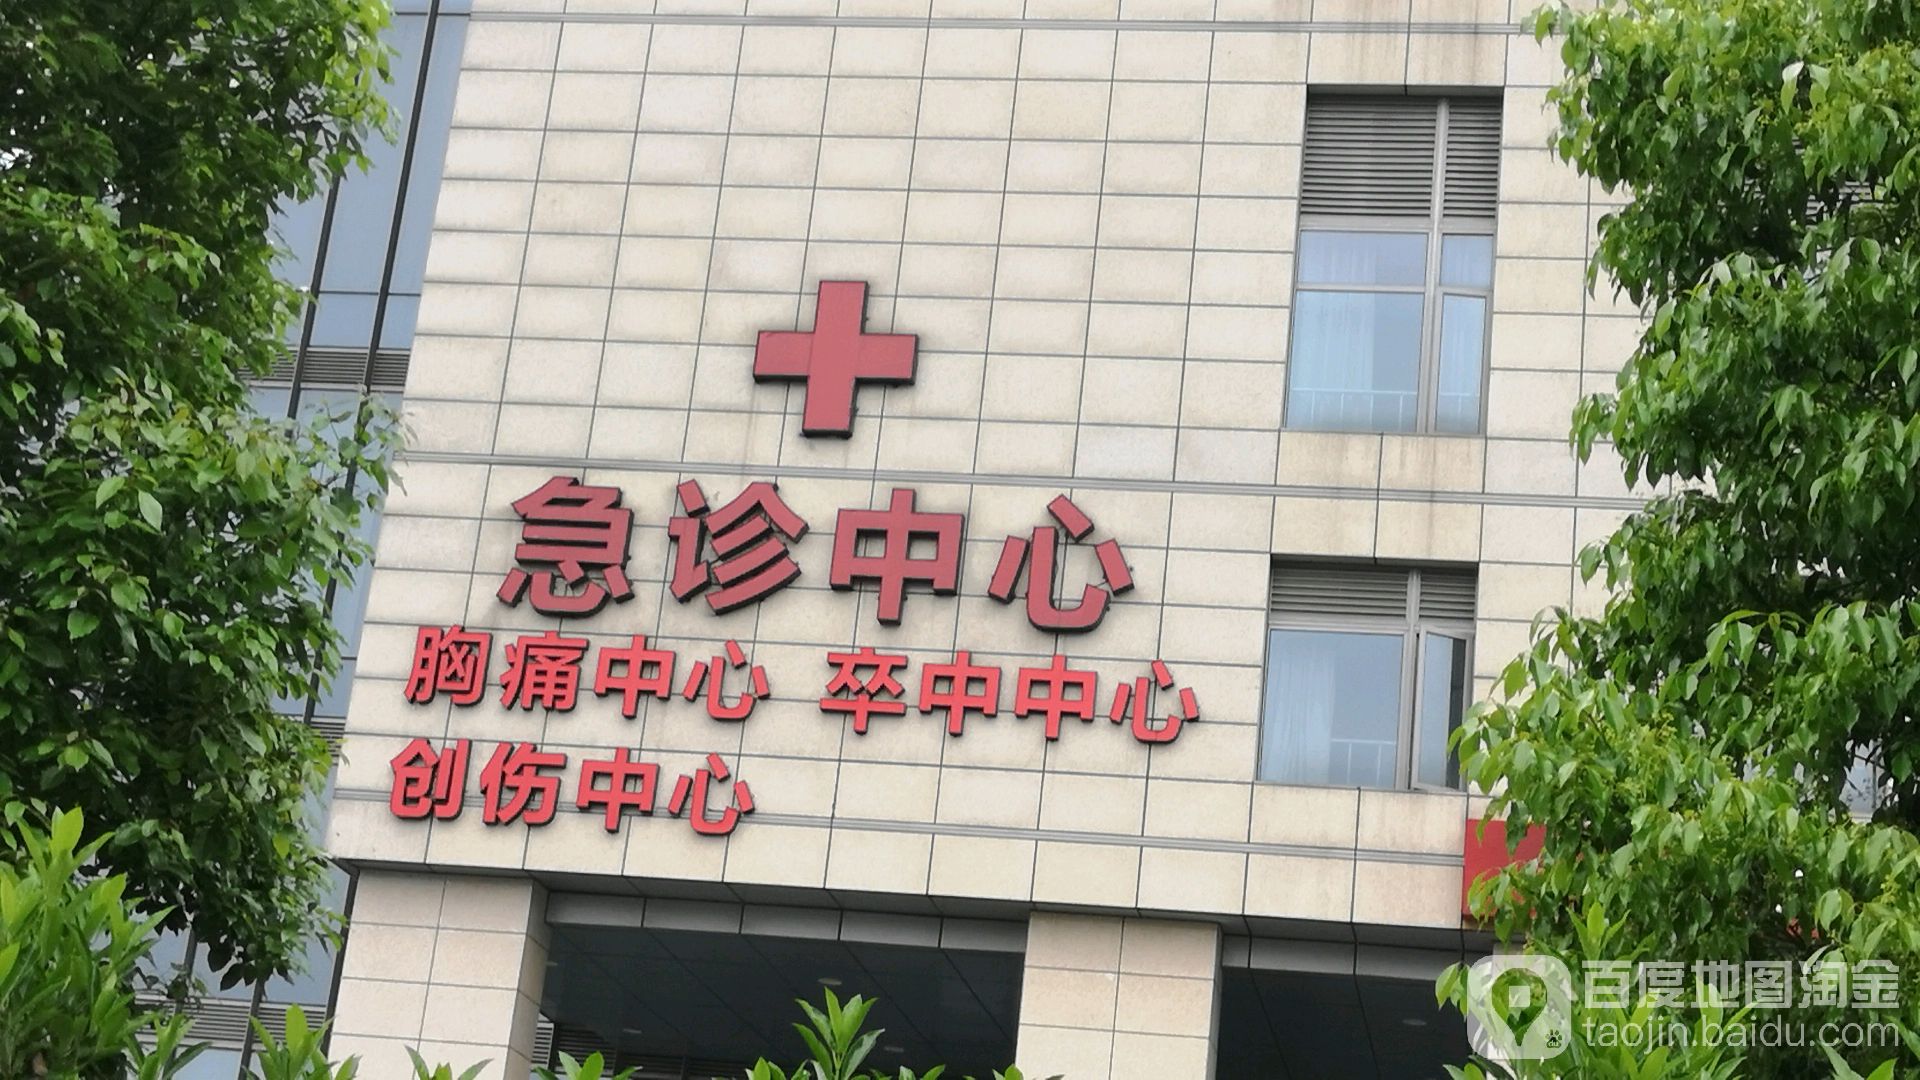 東部醫院急診中心